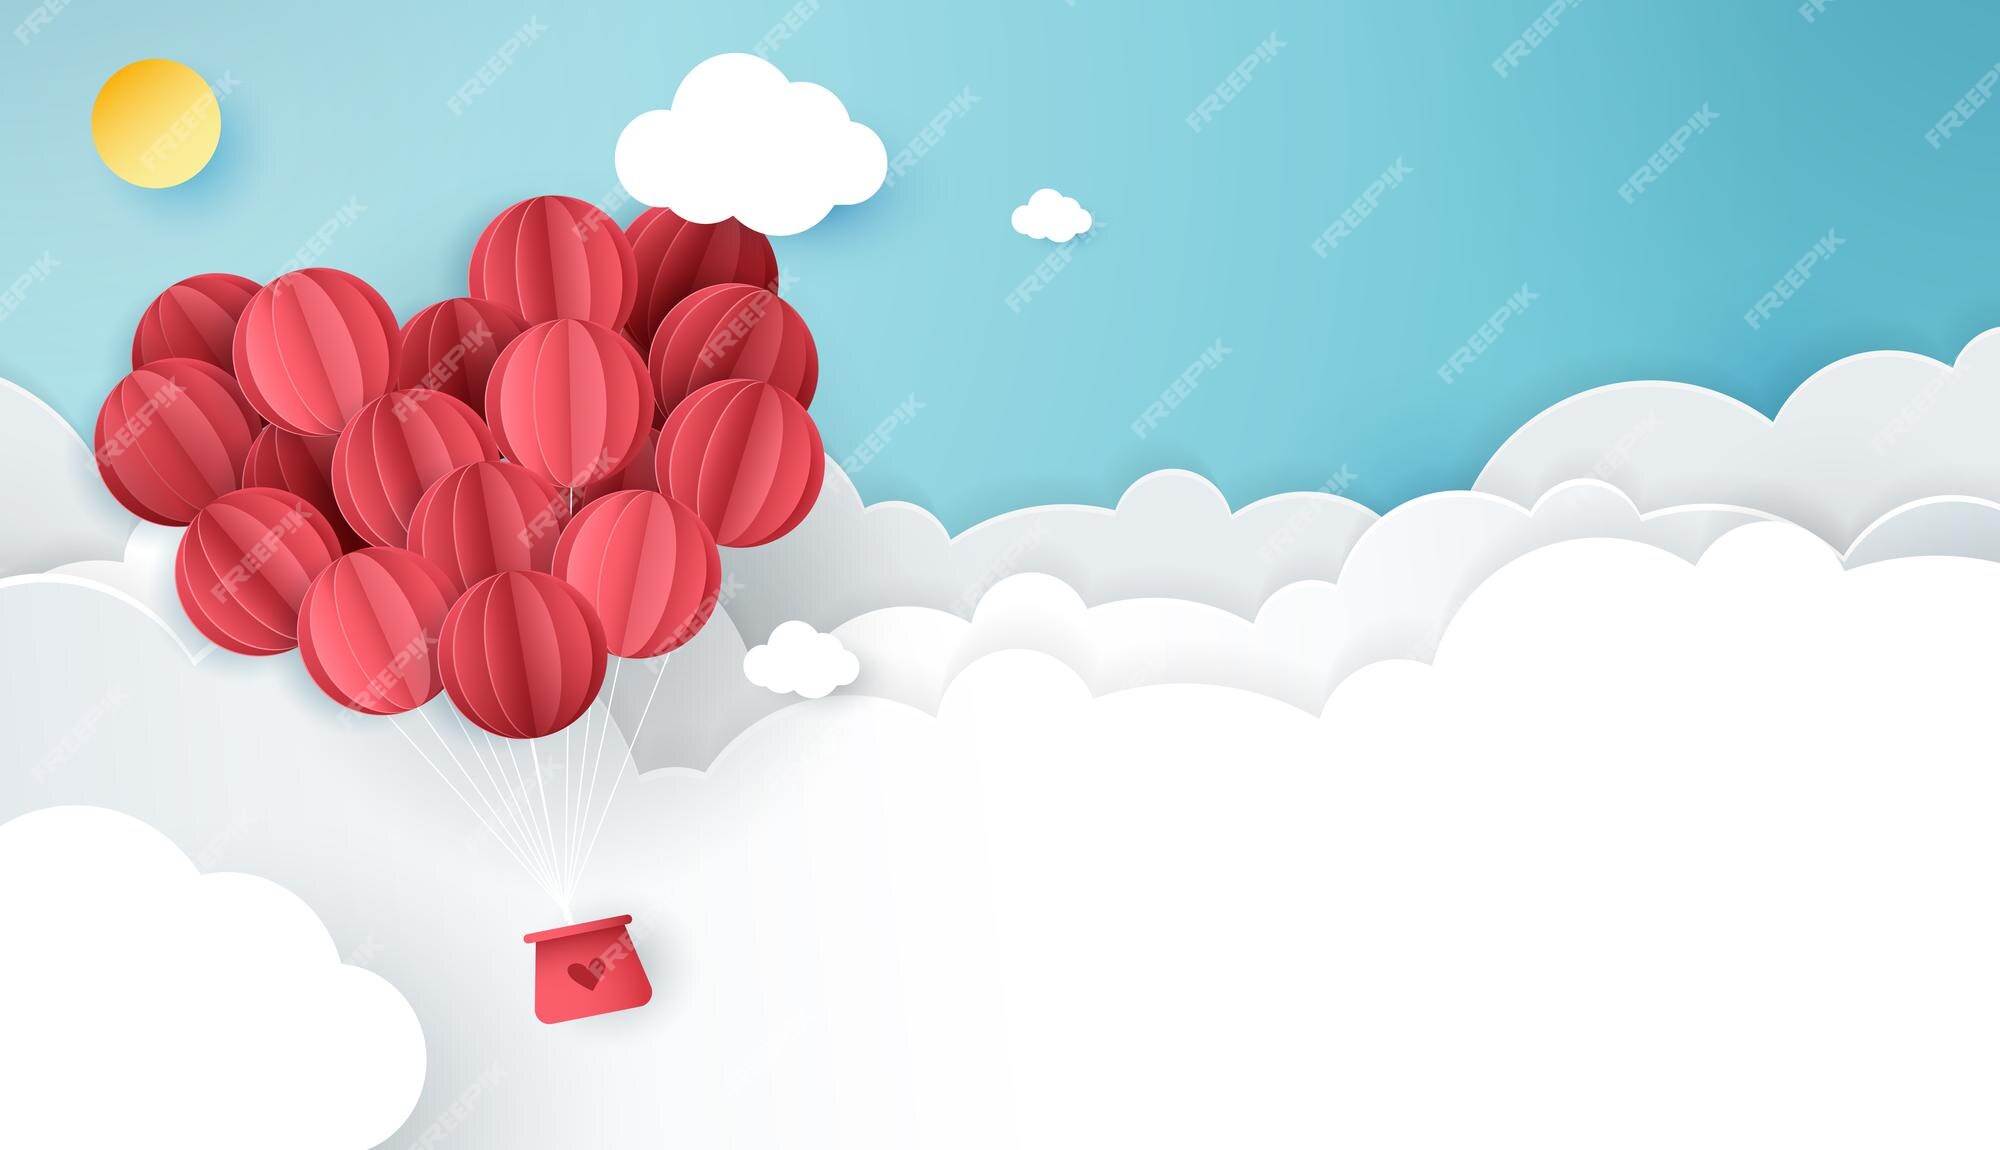 Palloncini a forma di cuore rosso che galleggiano nel cielo